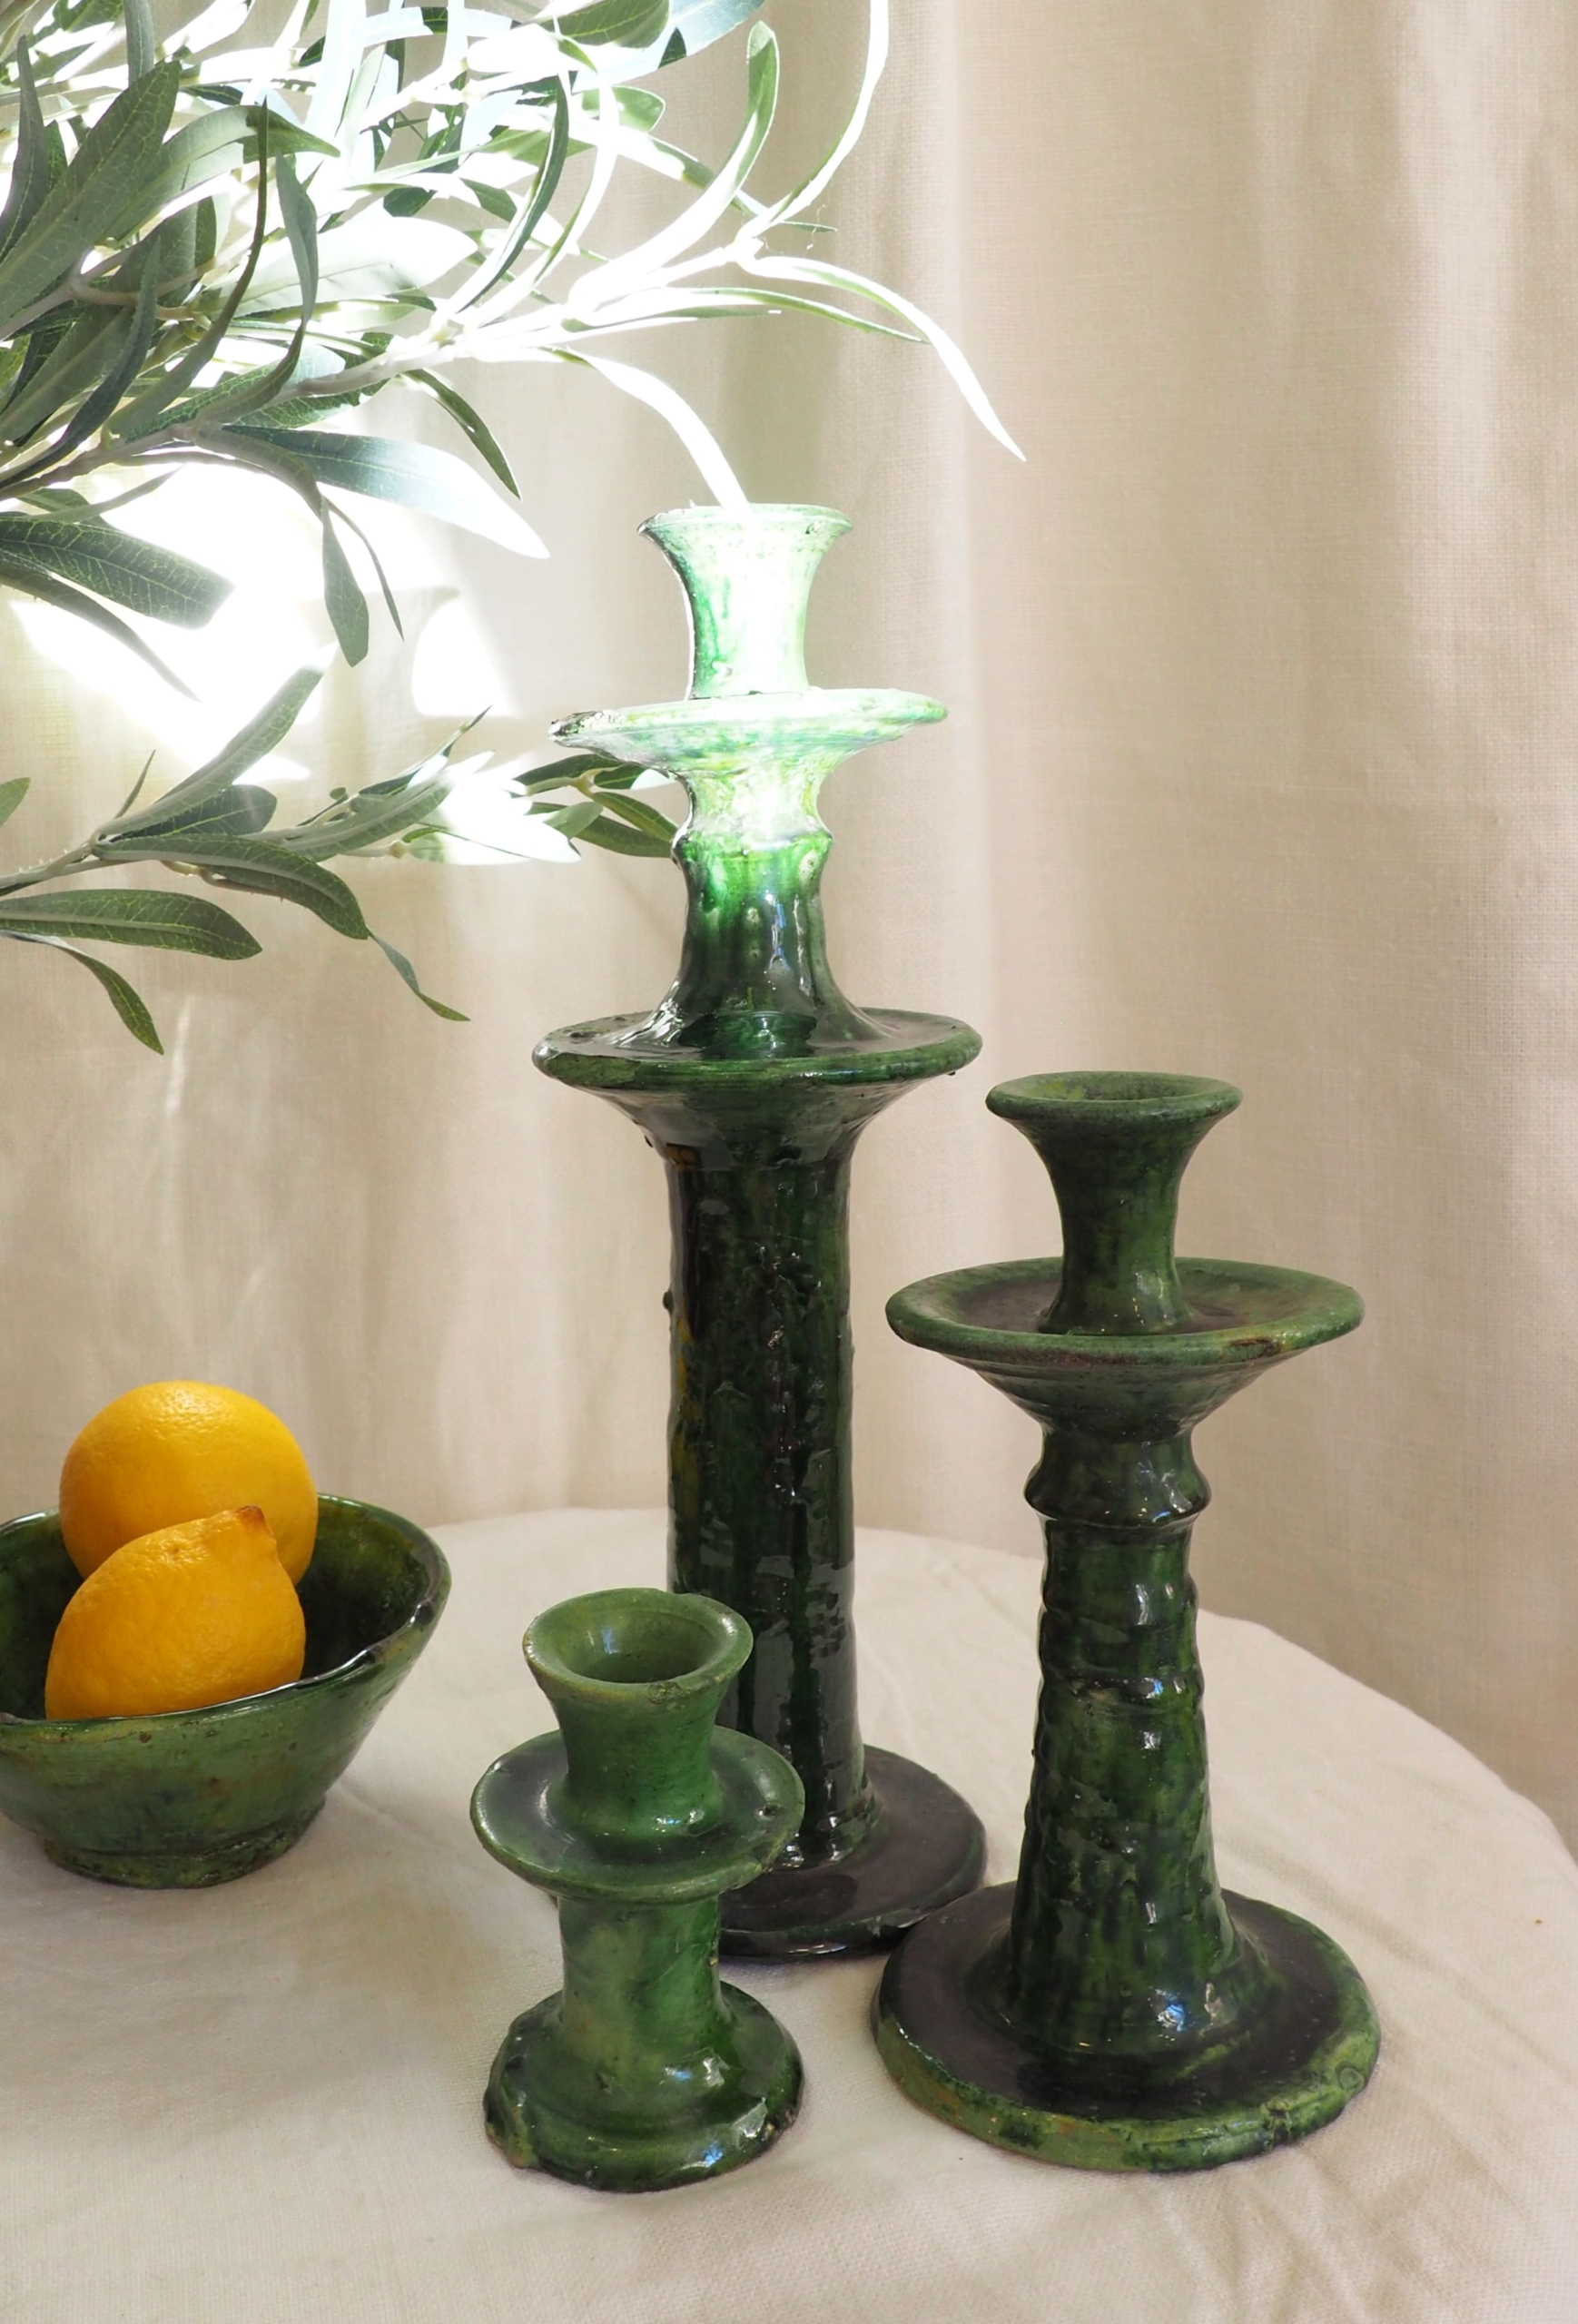 Poteries et céramiques Marocaines de Tamegroute émaillées vertes